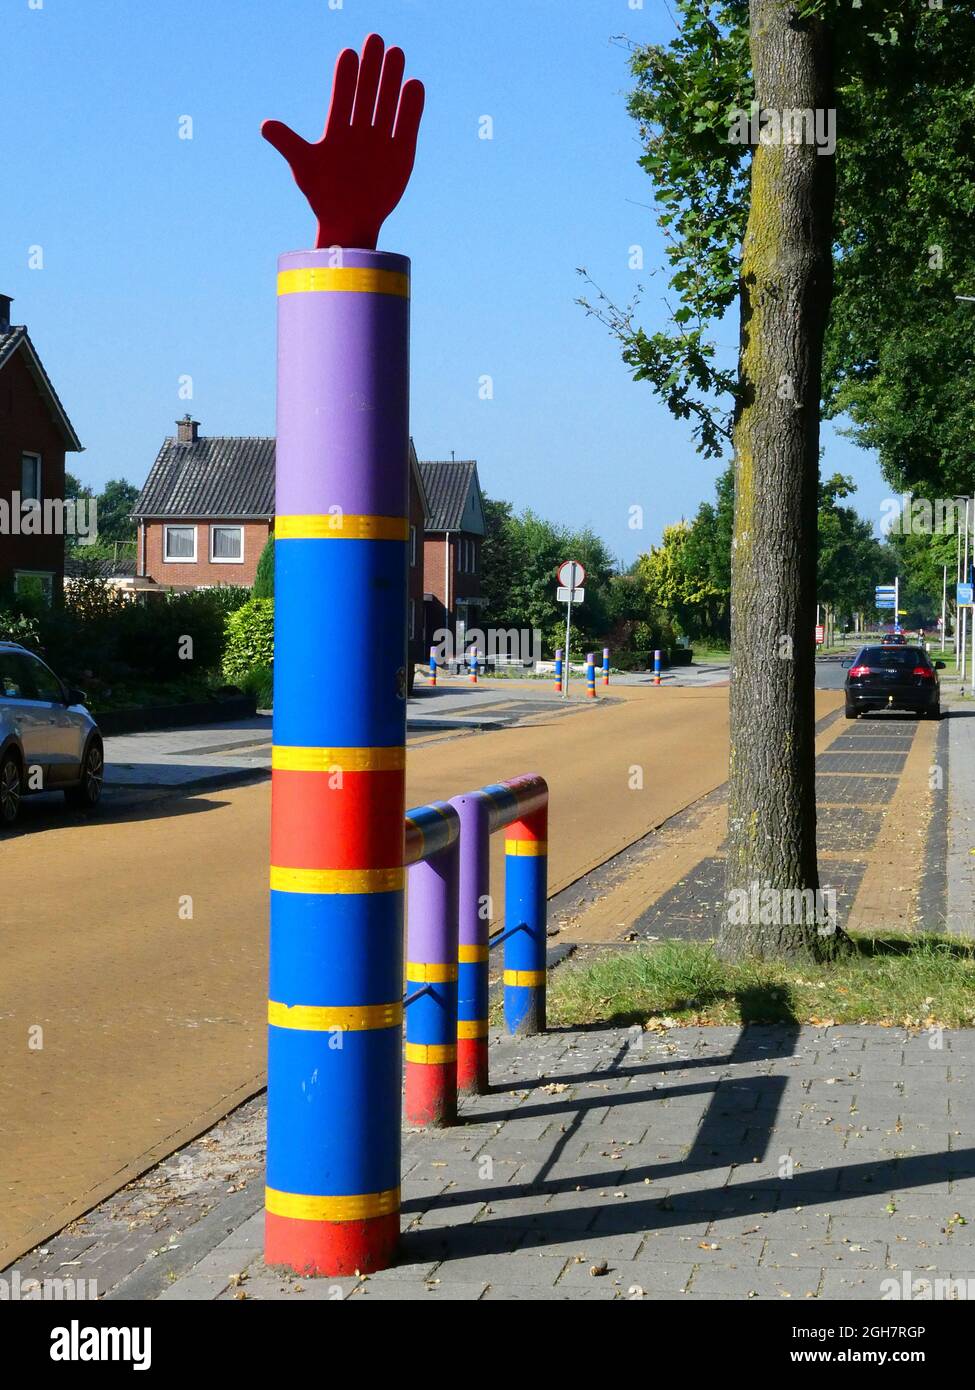 Geesteren, Paesi Bassi - 5 settembre 2021. Una mano di arresto sollevata su un palo colorato per avvertire il traffico. C'è una scuola nelle vicinanze. Foto Stock